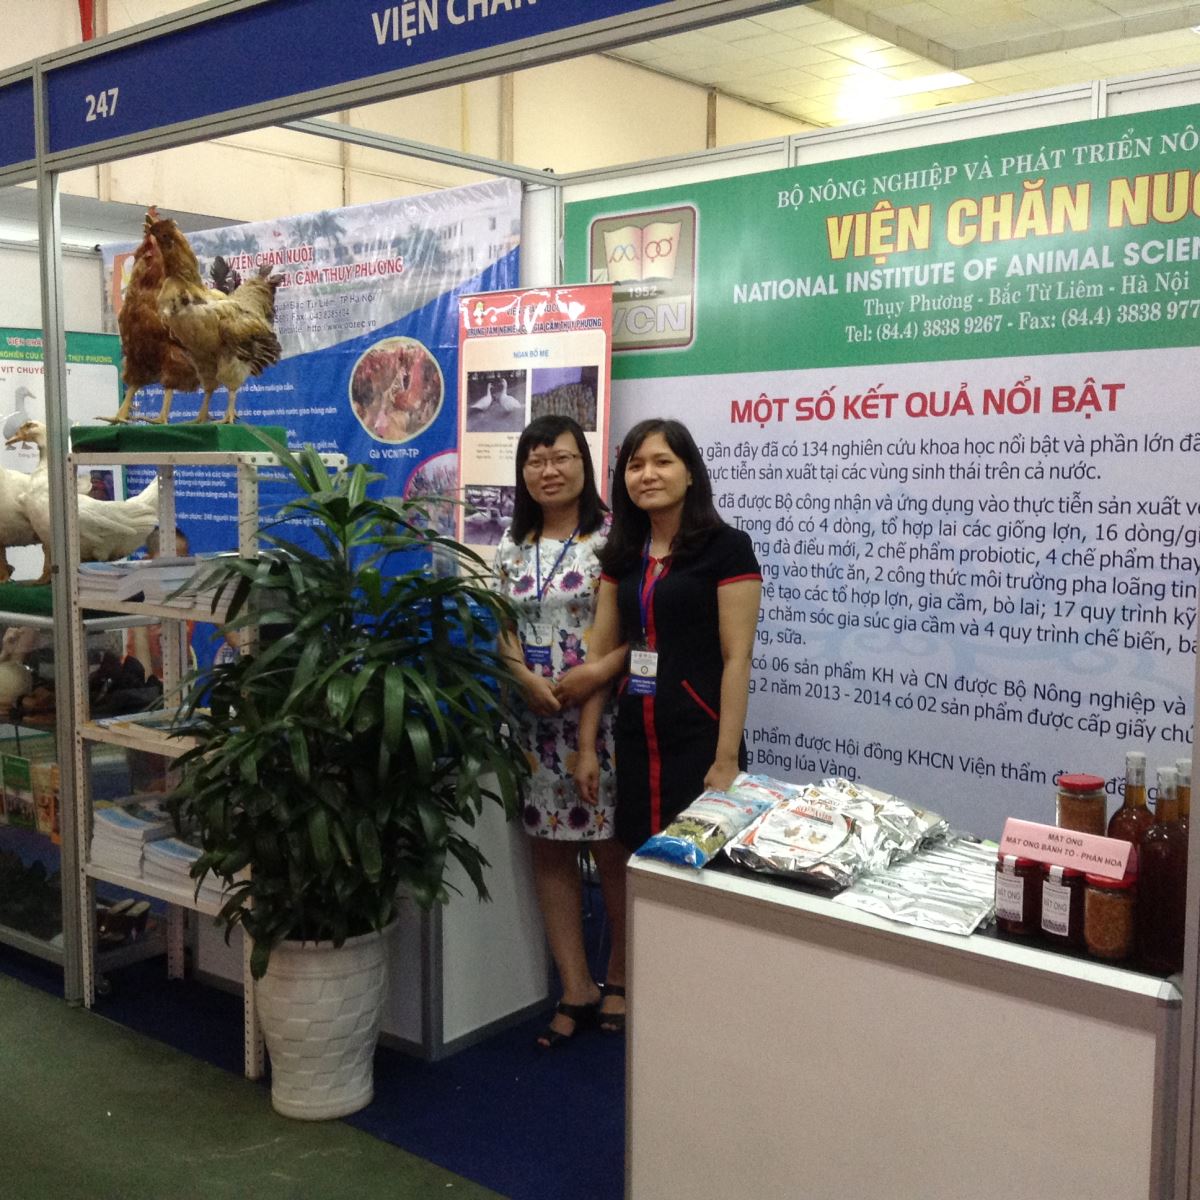 Viện Chăn nuôi tham gia triển lãm tại Hội chợ công nghệ và thiết bị quốc tế Việt Nam 2015 - Techmart 2015